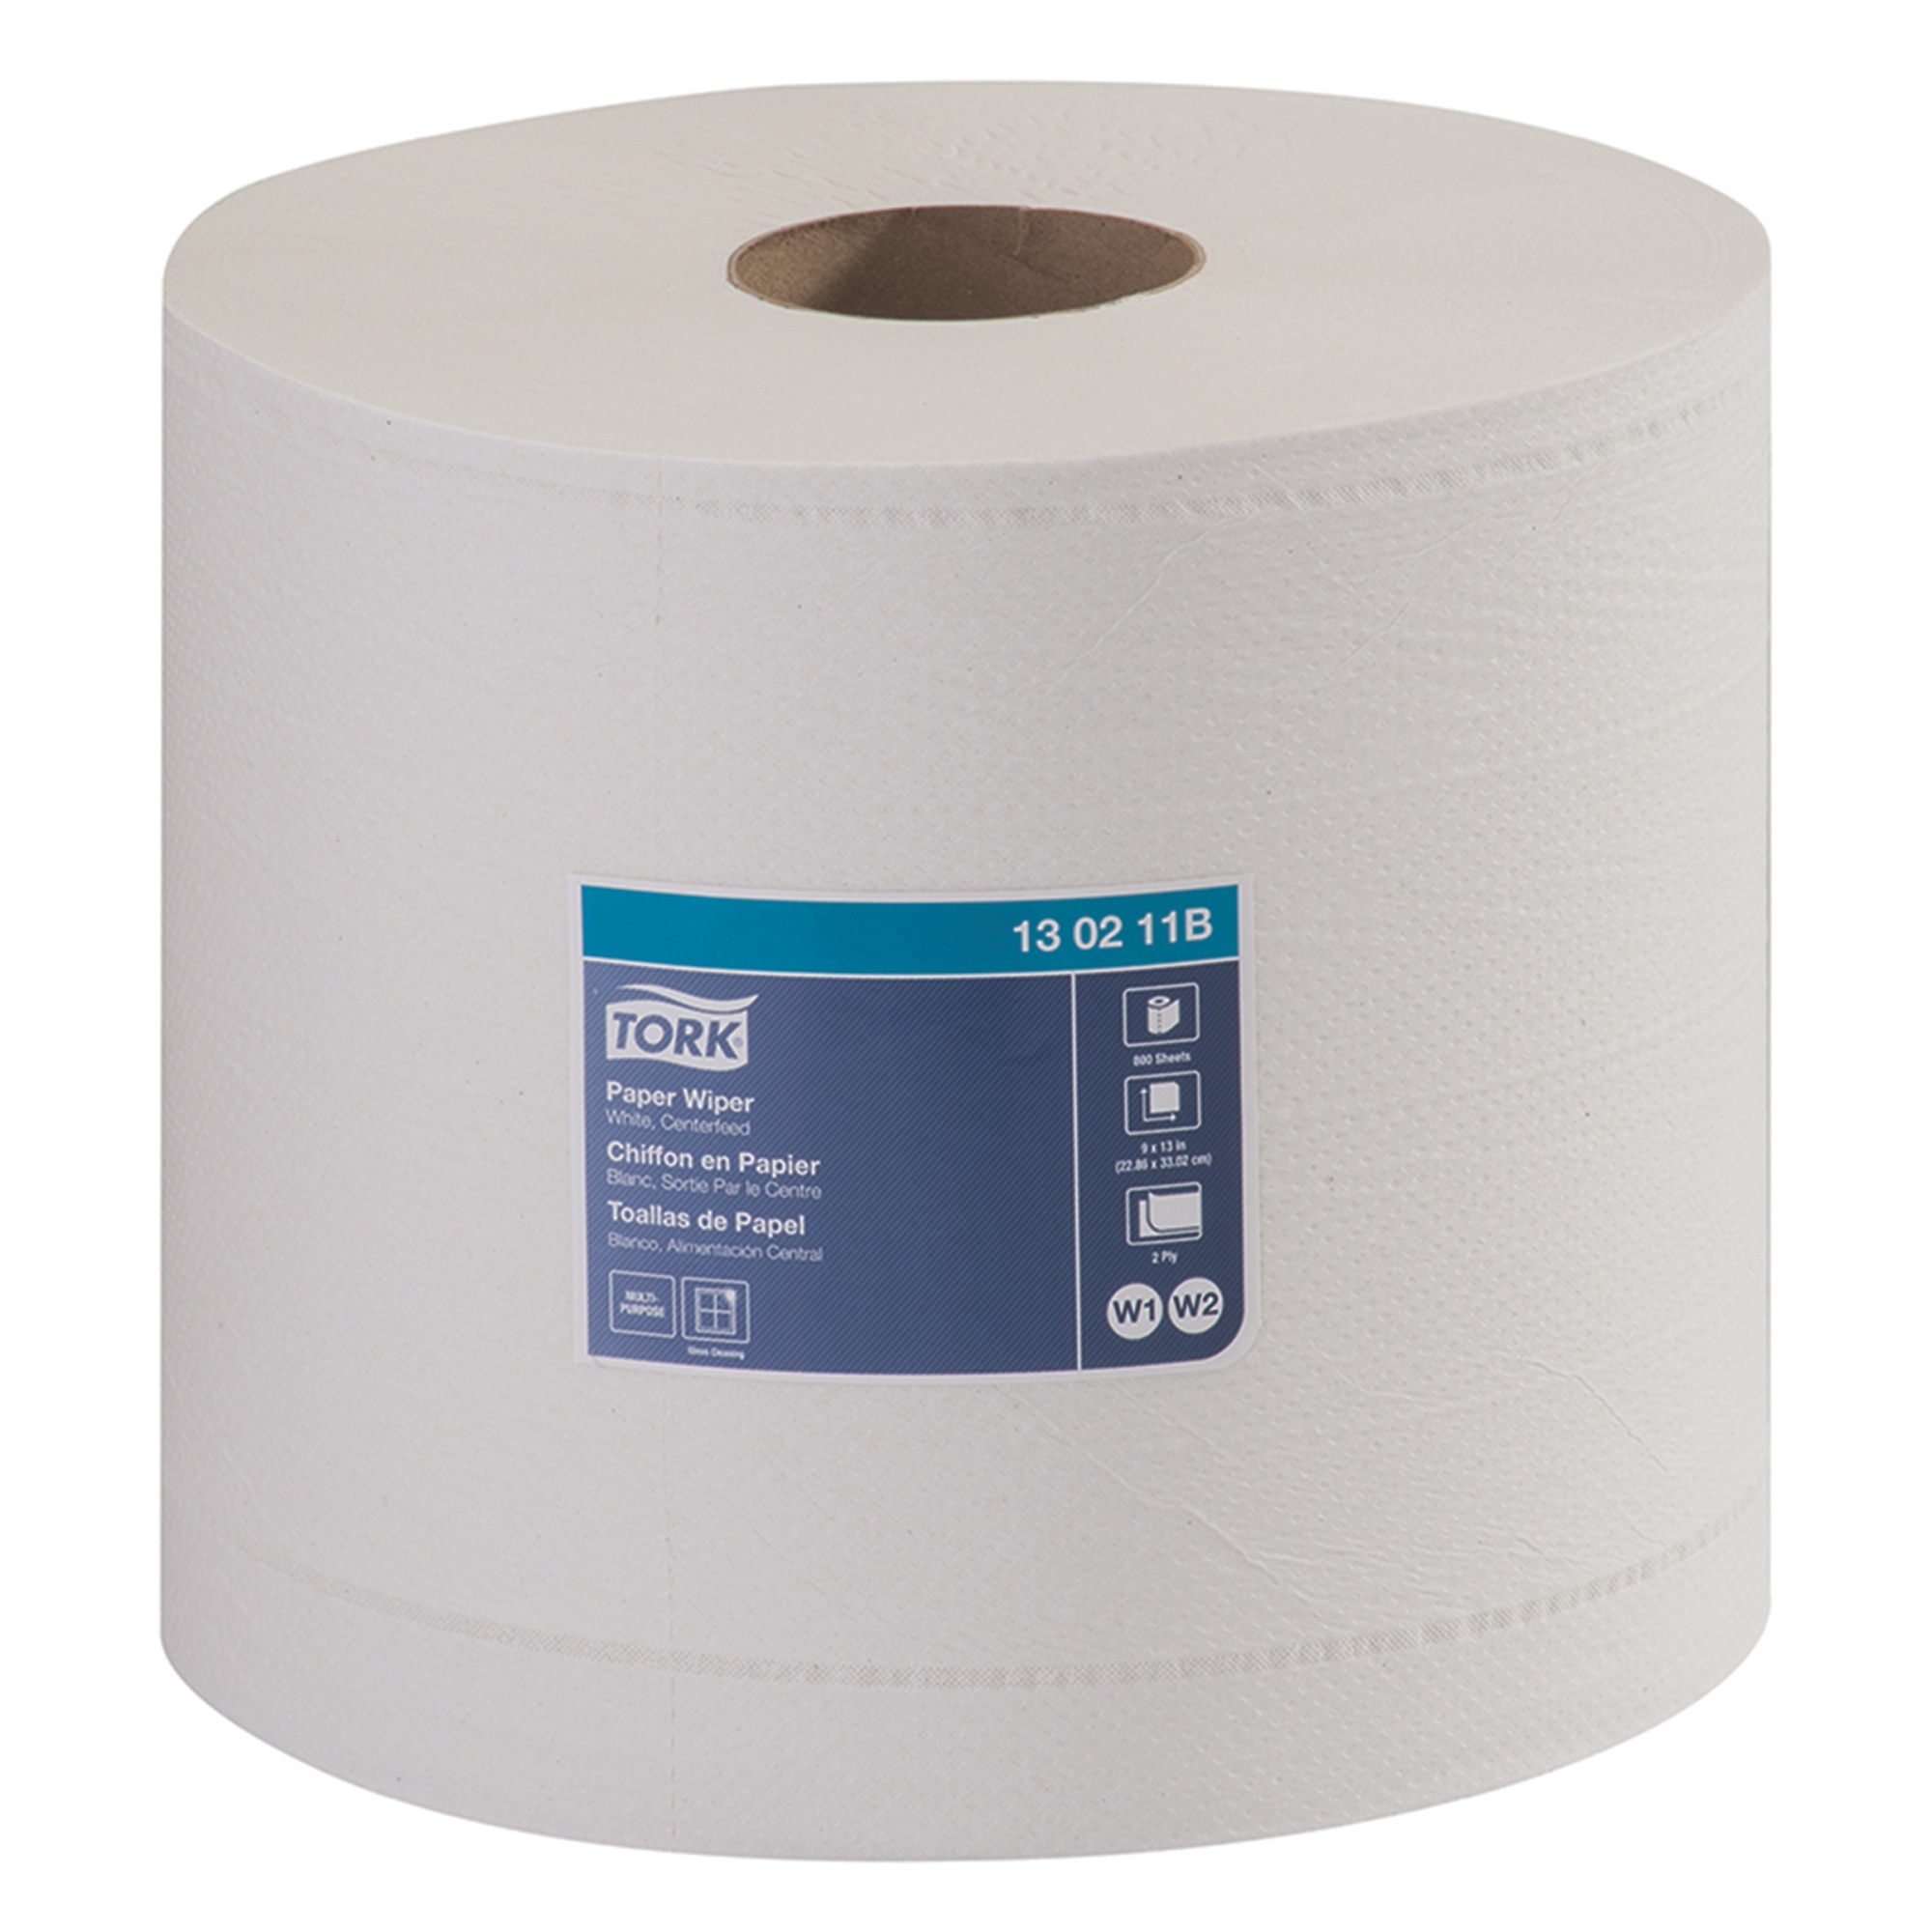 Tork Paper Wiper, Centerfeed | 130211B | Centerfeed towel | Refill